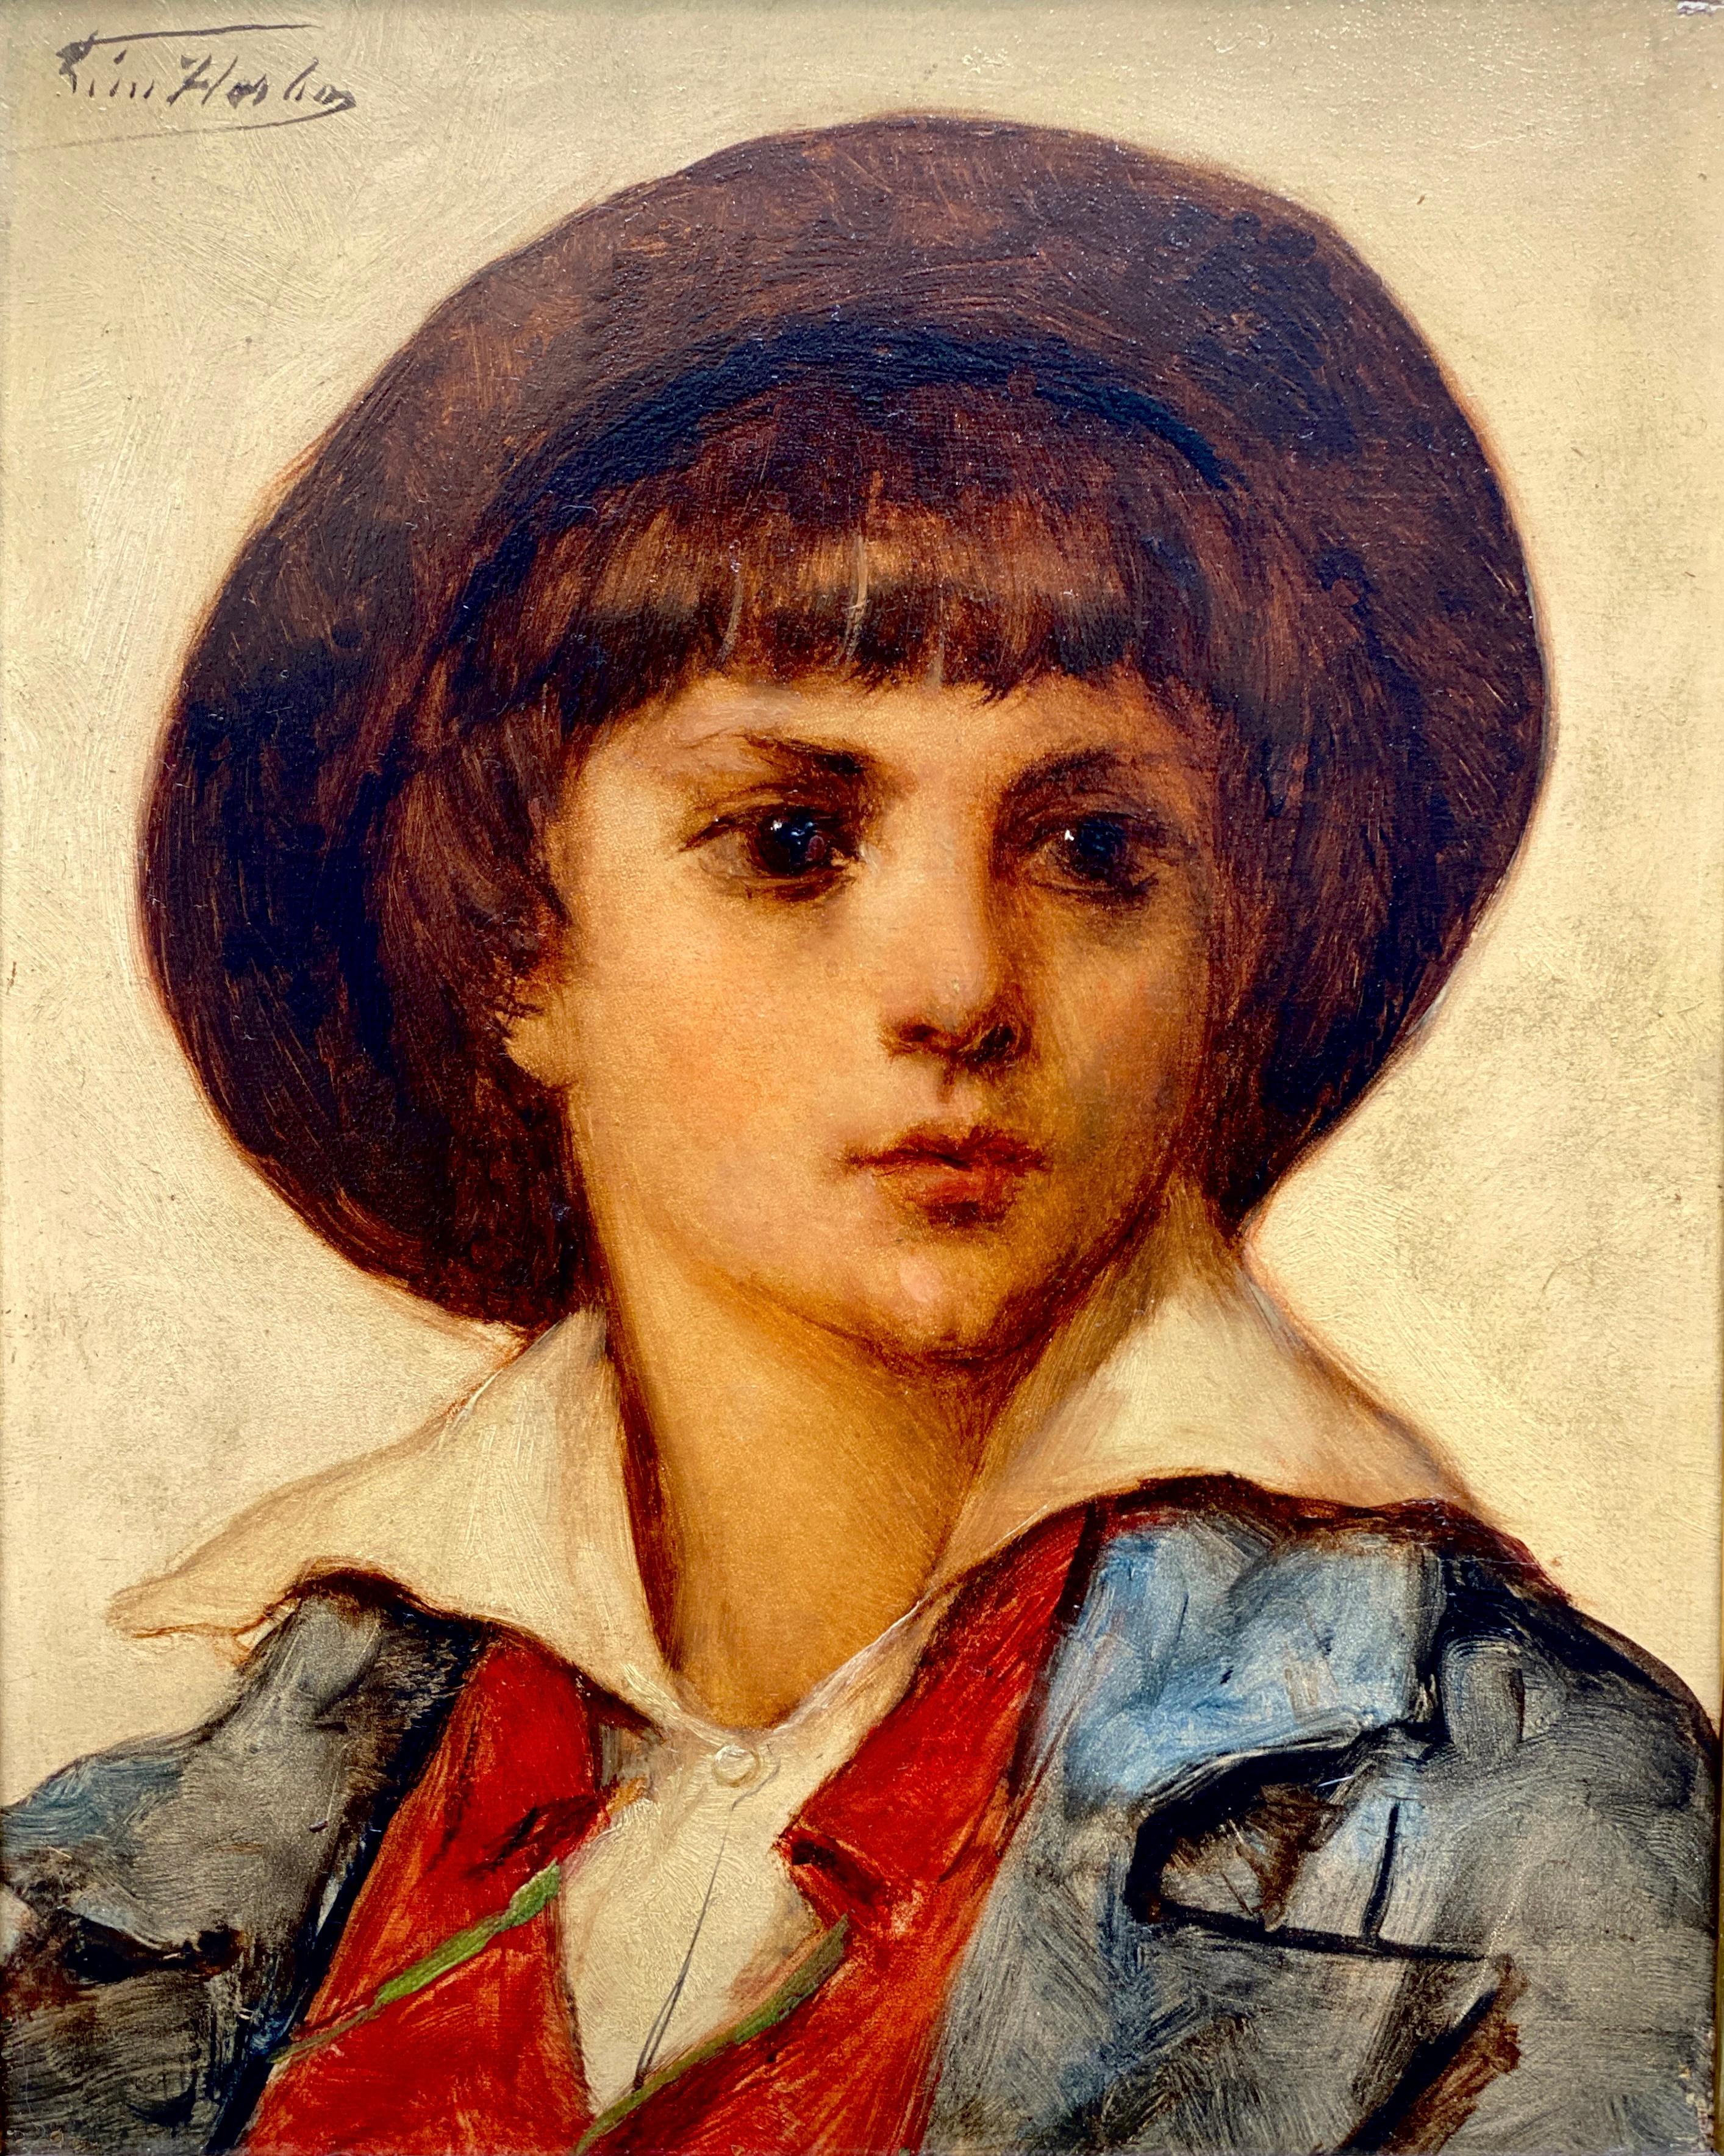 Léon Herbo, Templeuve 1850 - 1907 Ixelles, belgischer Maler, 'Bildnis eines Jungen' – Painting von Leon Herbo